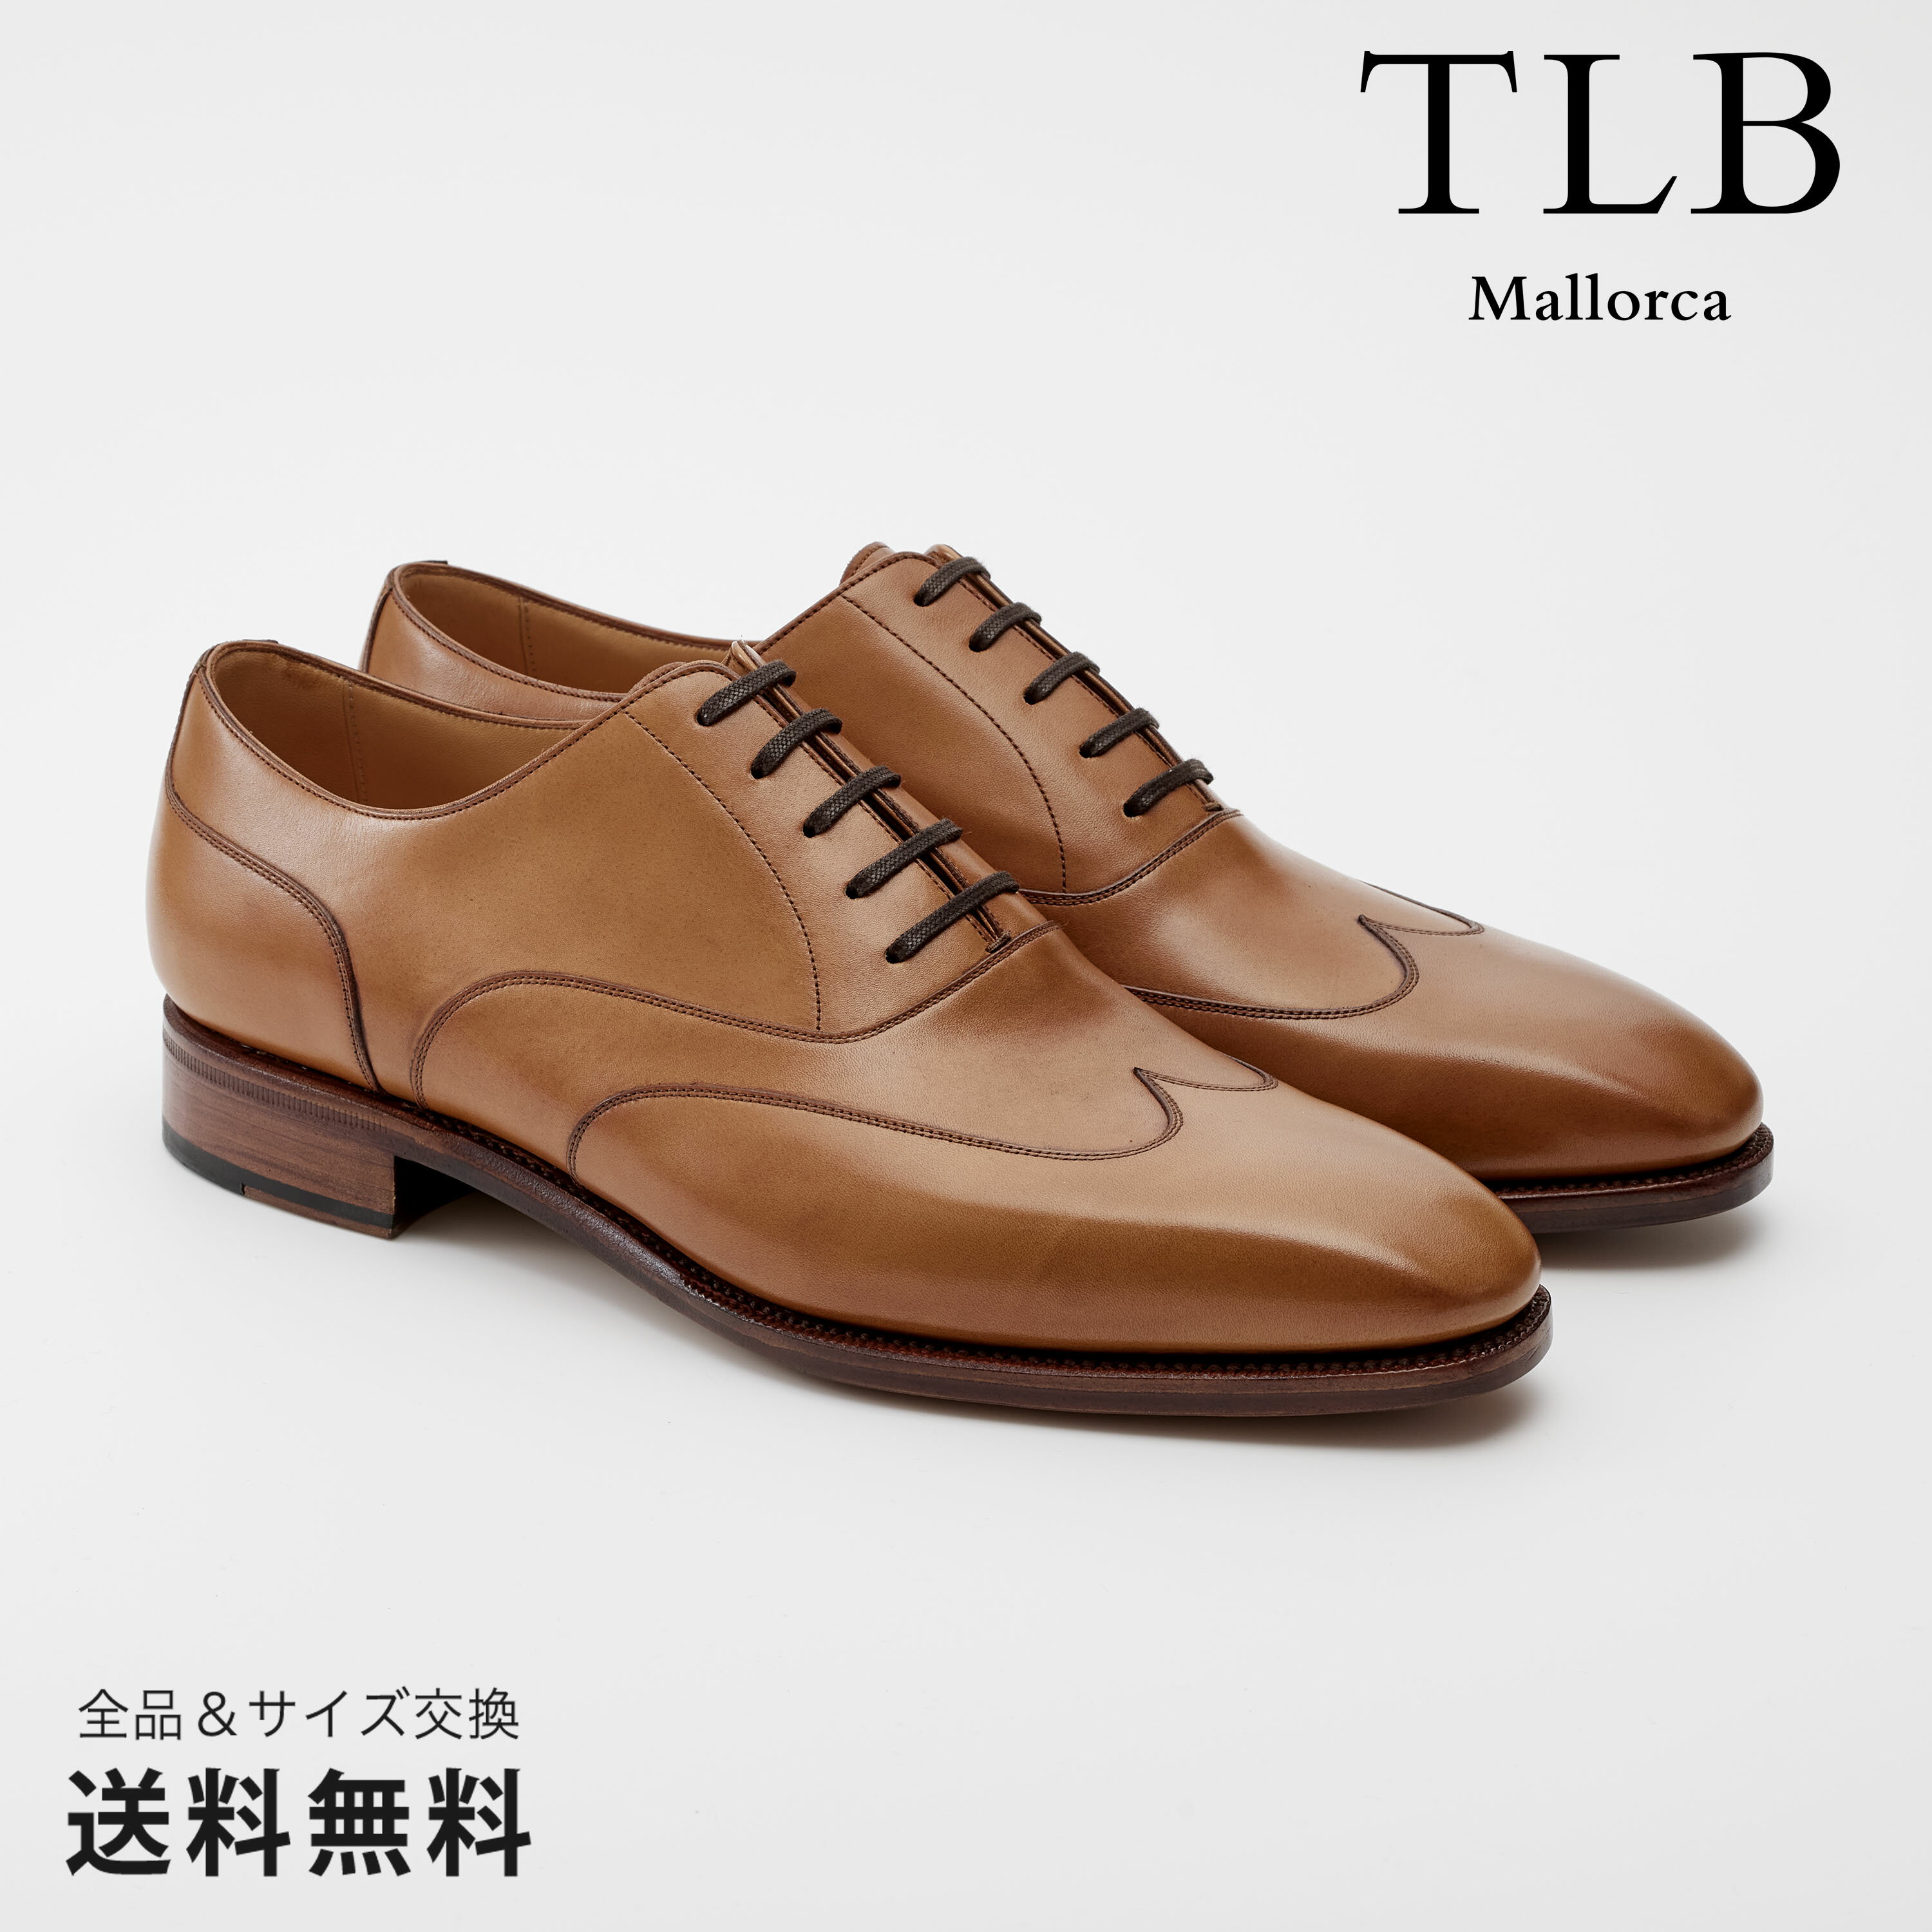 【公式】TLB Mallorca ティーエルビー レースアップ オックスフォード 革靴 ボックスカーフ ブラウン グットイヤーウェルト 茶 BROWN 10600 スペイン 靴 メンズ靴 ビジネスシューズ サイズ 24.0 - 26.5cm【あす楽】